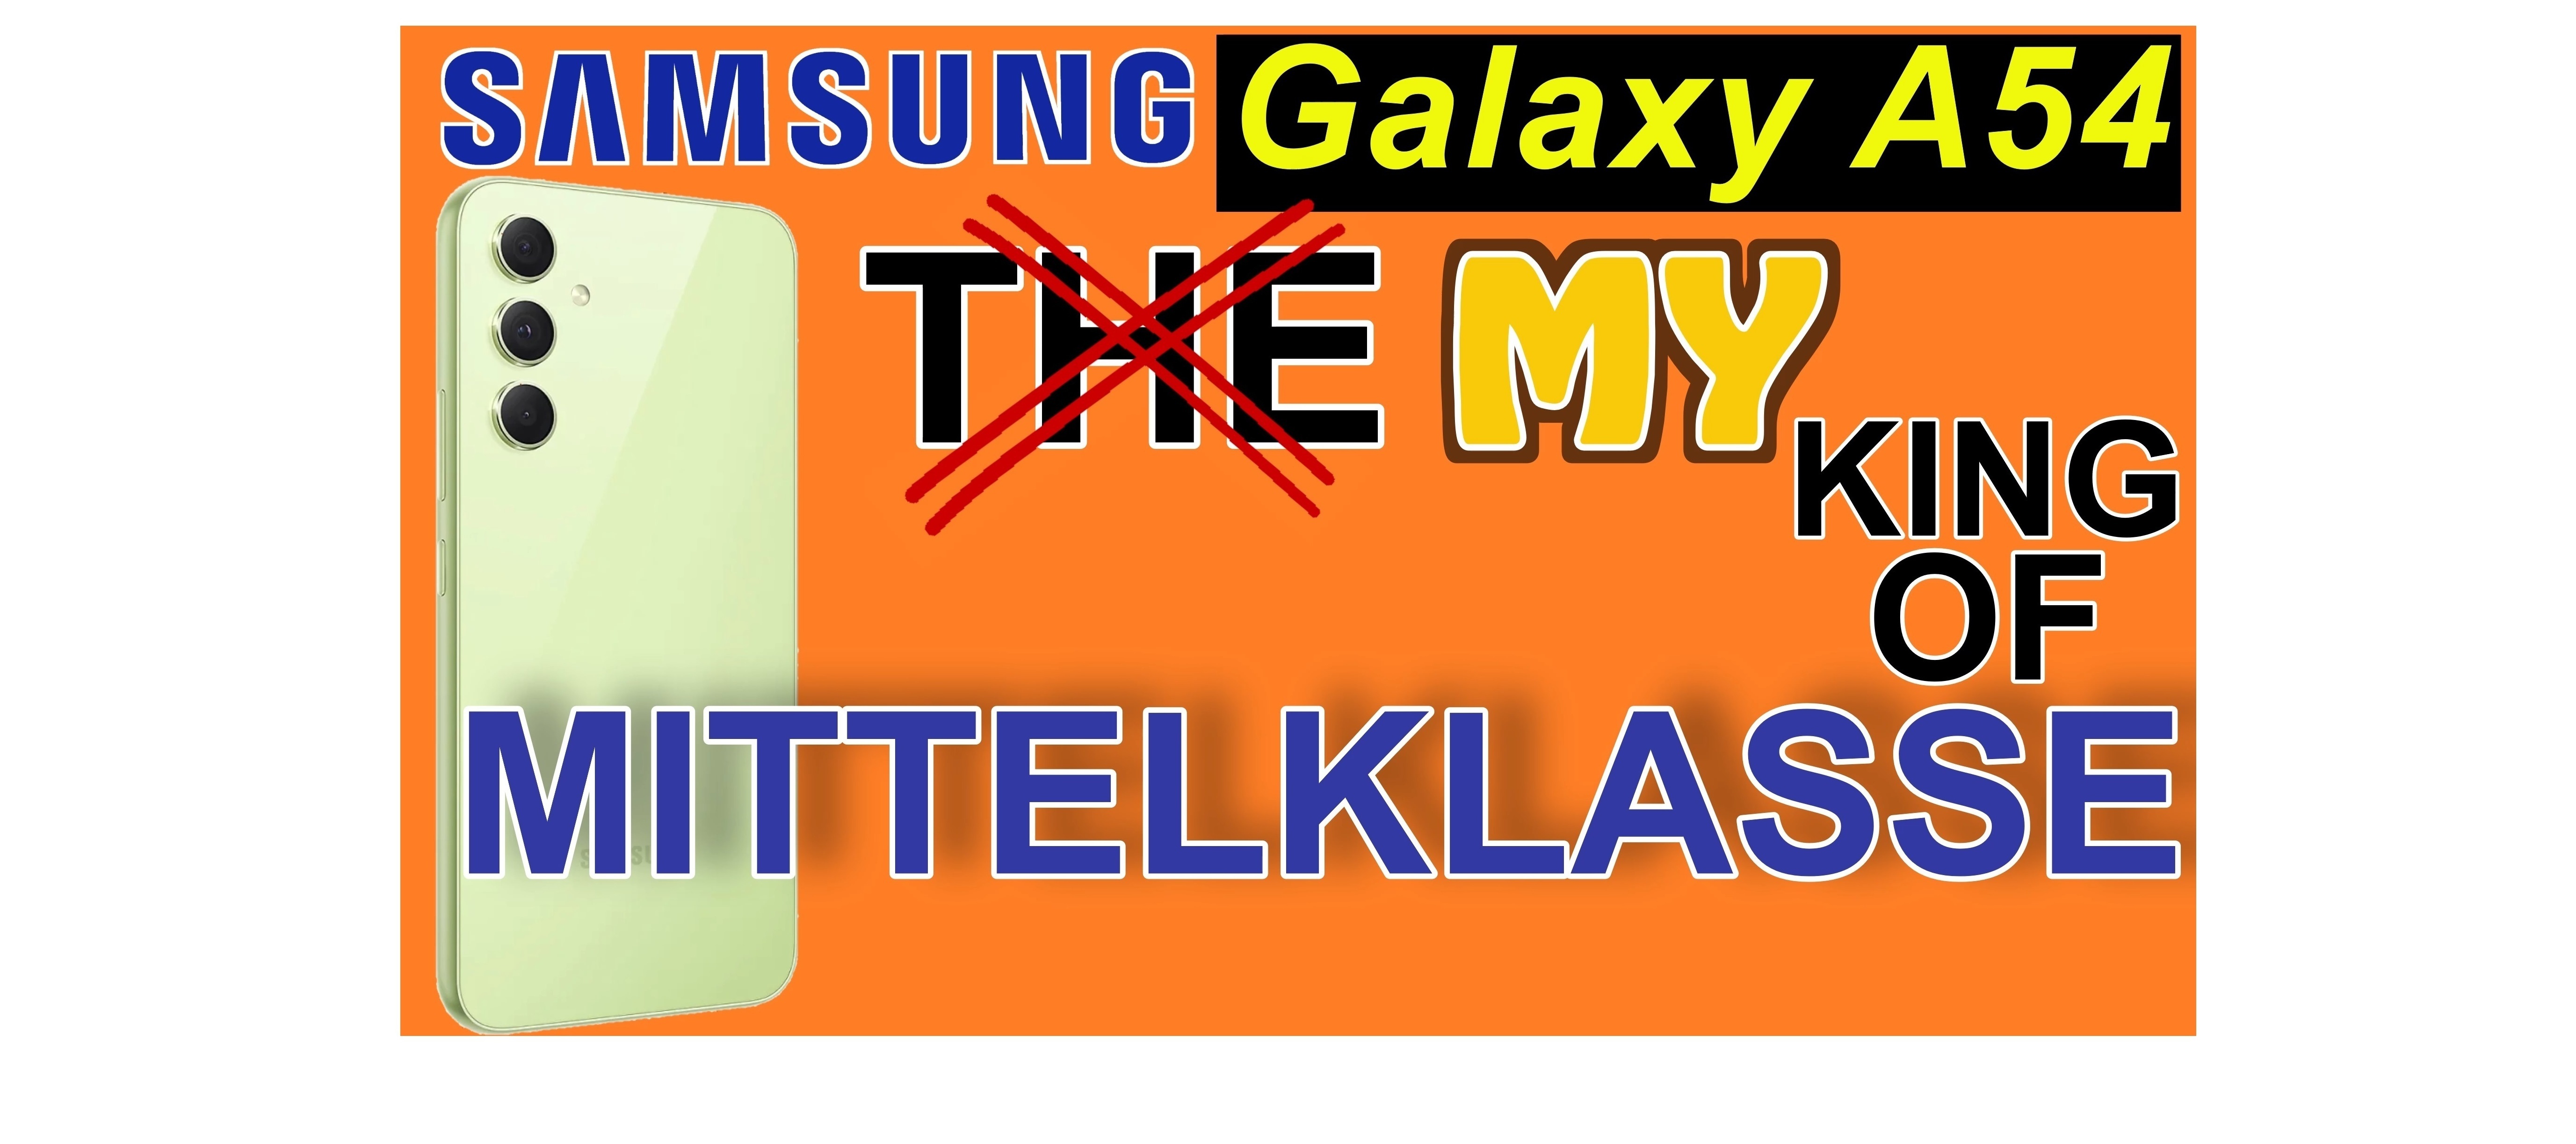 Samsung Galaxy A54 - Speerspitze der Mittelklasse | SeppelPower